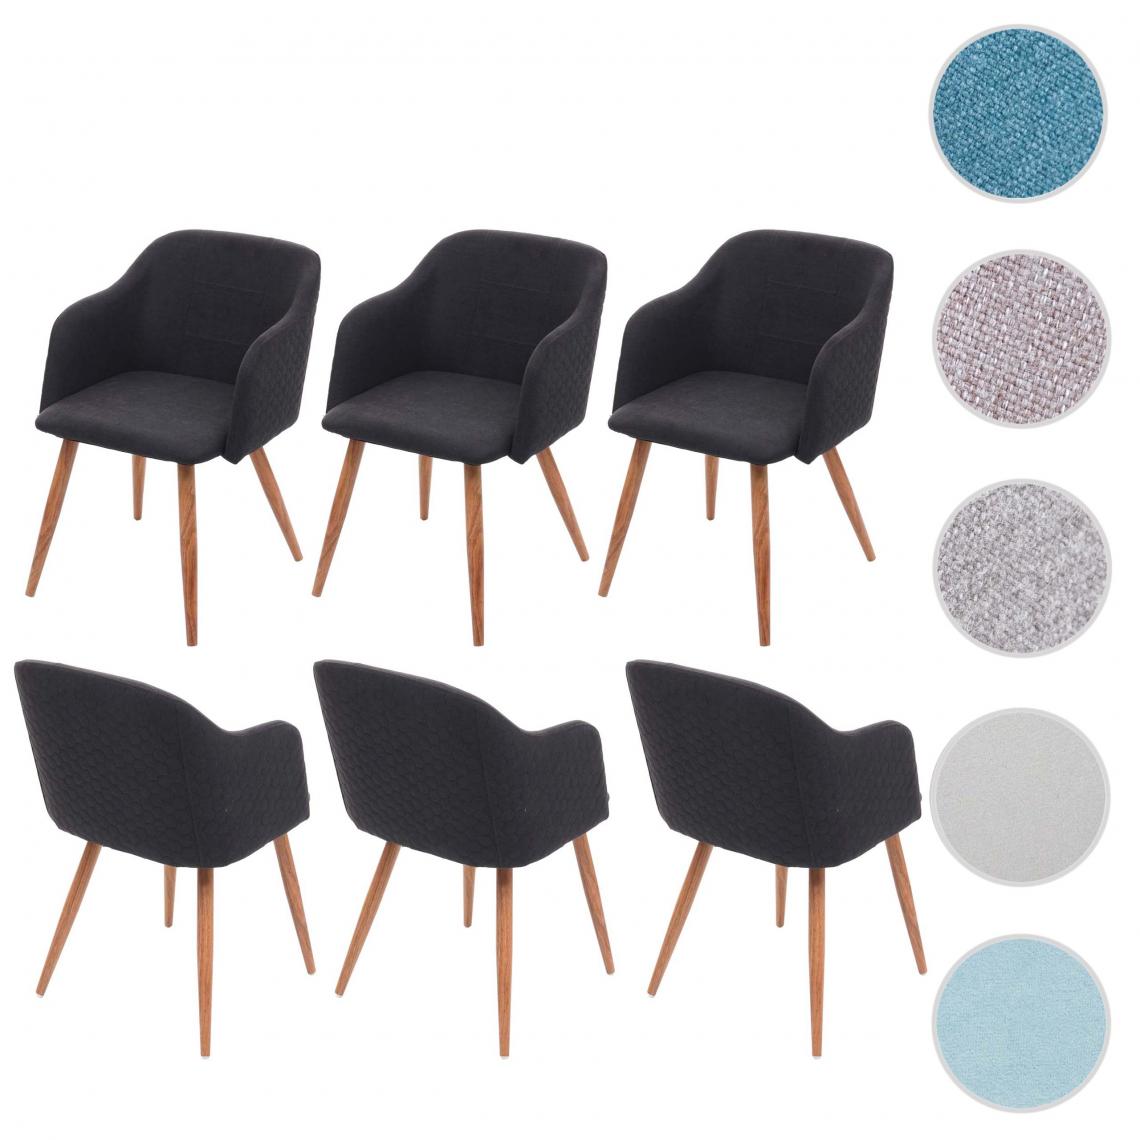 Mendler - 6x chaise de salle à manger HWC-D71, design rétro, accoudoirs tissu/textile ~ gris anthracite - Chaises